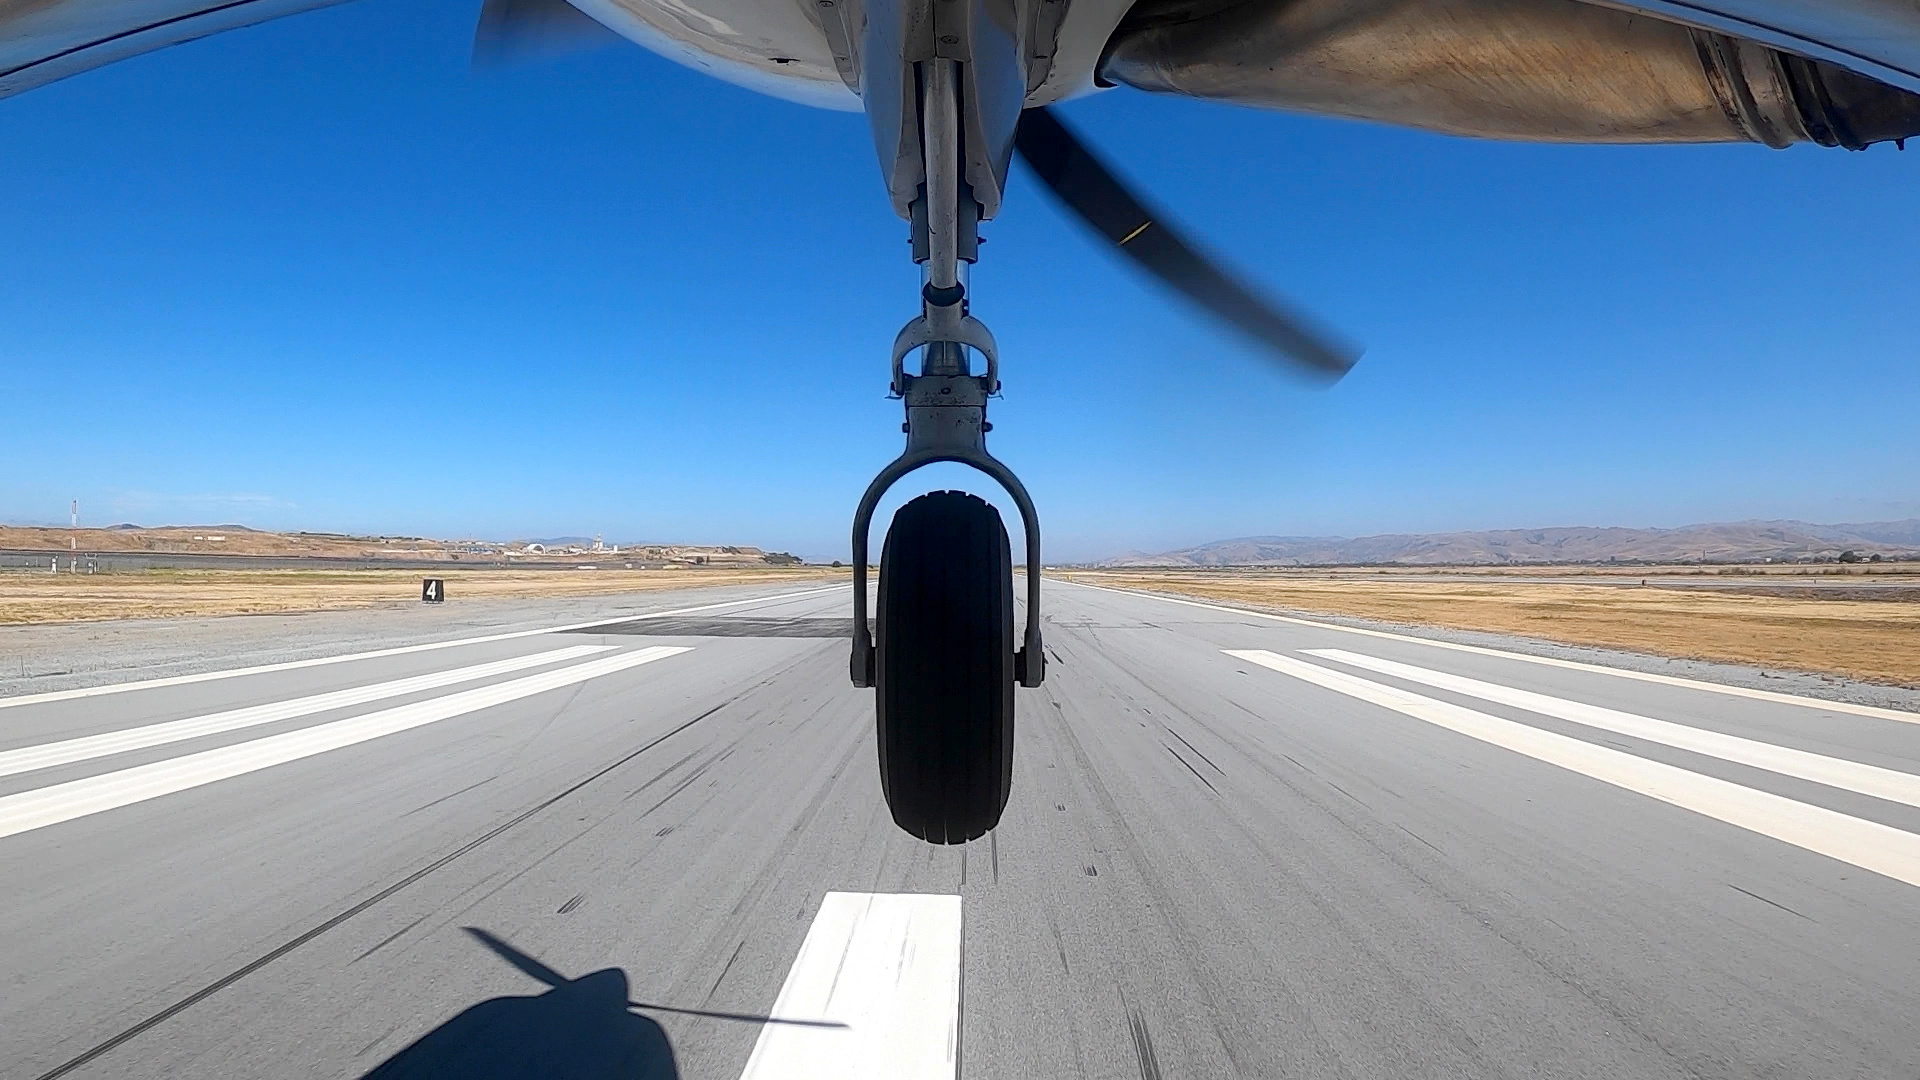 Foto de archivo de un Cessna 208 volando sobre California, EE.UU. Reliable Robotics/Handout via REUTERS 